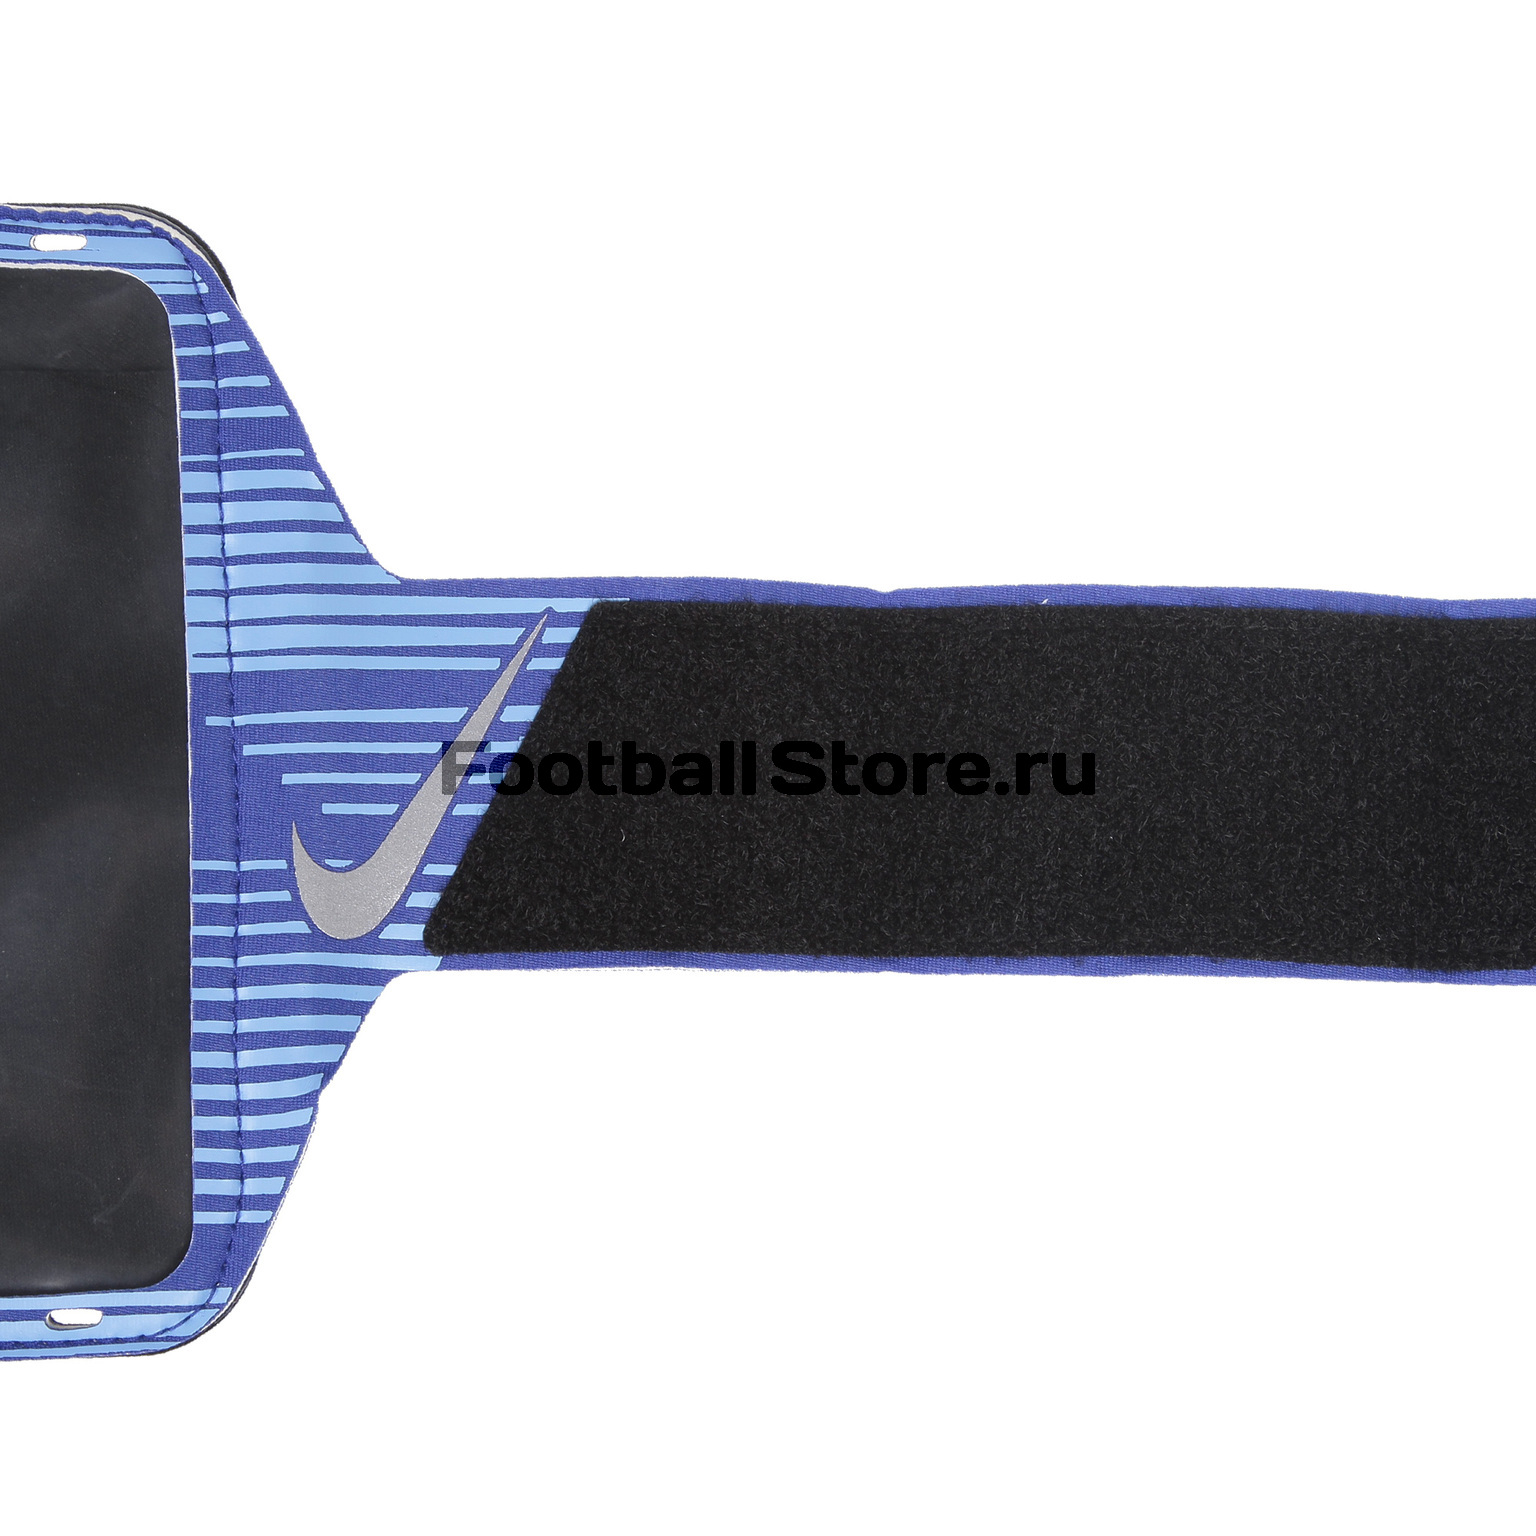 Чехол для смартфона на руку Nike Printed Lean Arm Band N.RN.68.439.OS